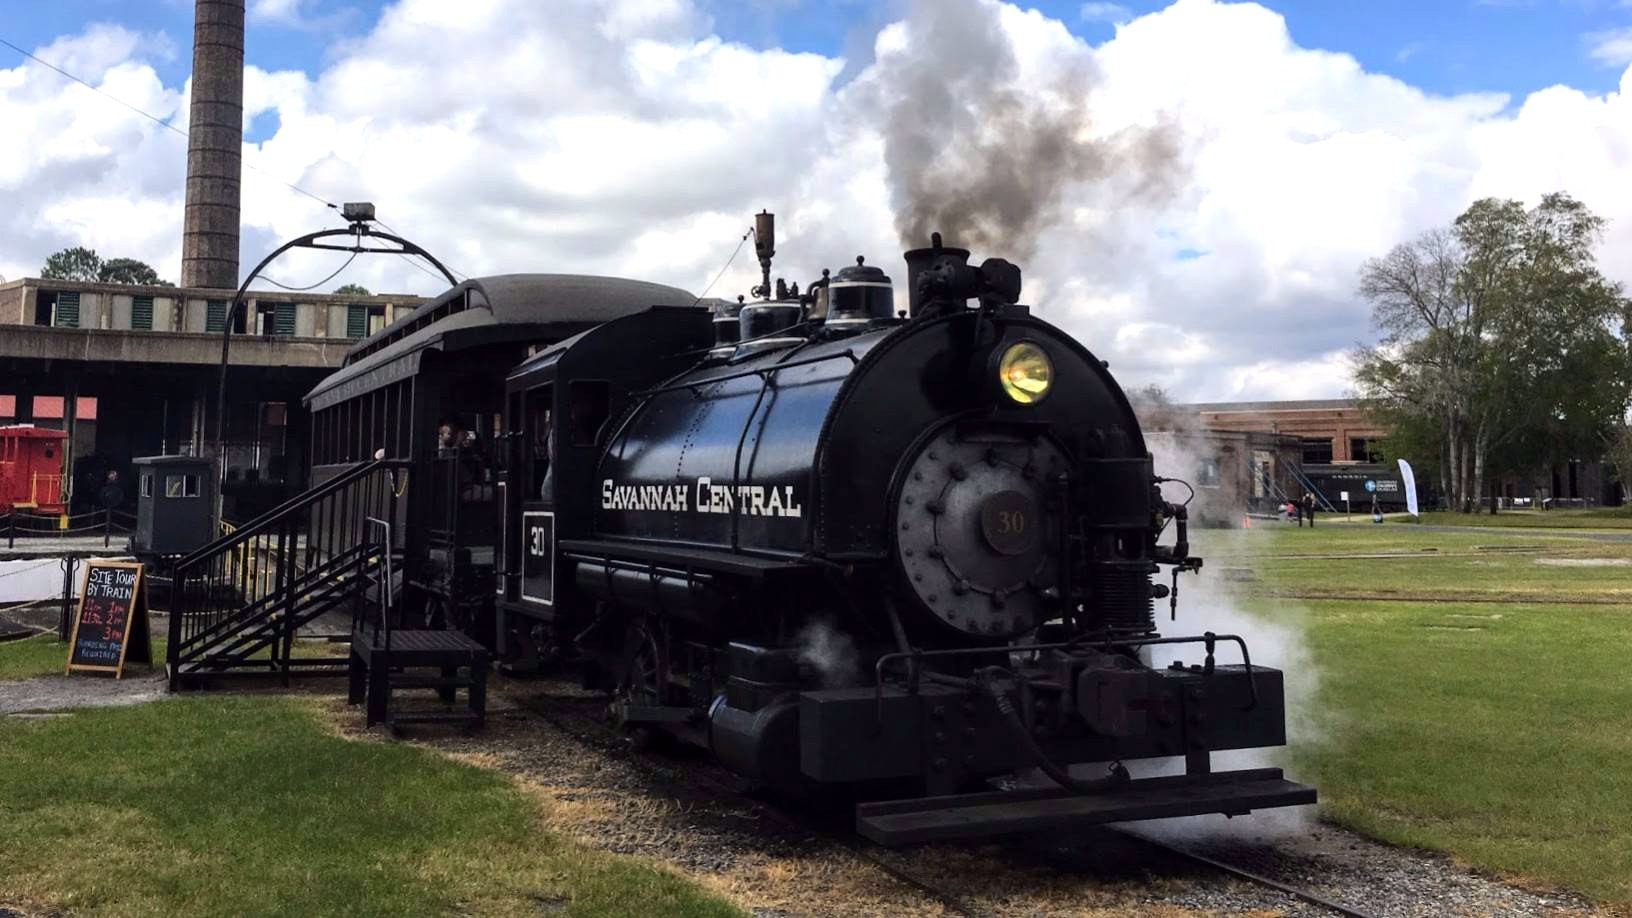 Georgia Railroad museum in Savannah